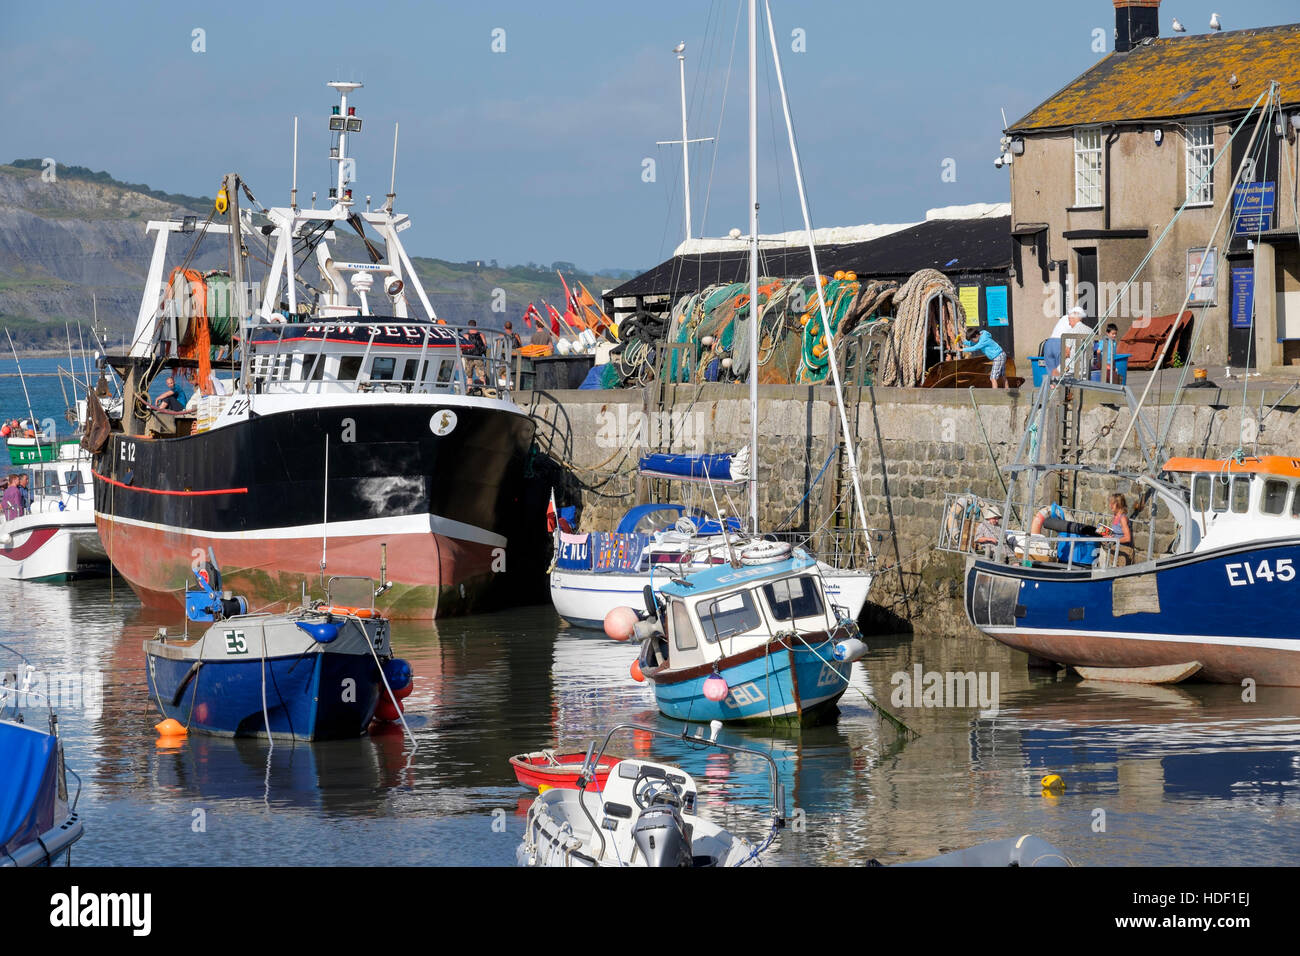 Les bateaux de pêche amarrés dans le port de Lyme Regis, Dorset, England, UK Banque D'Images